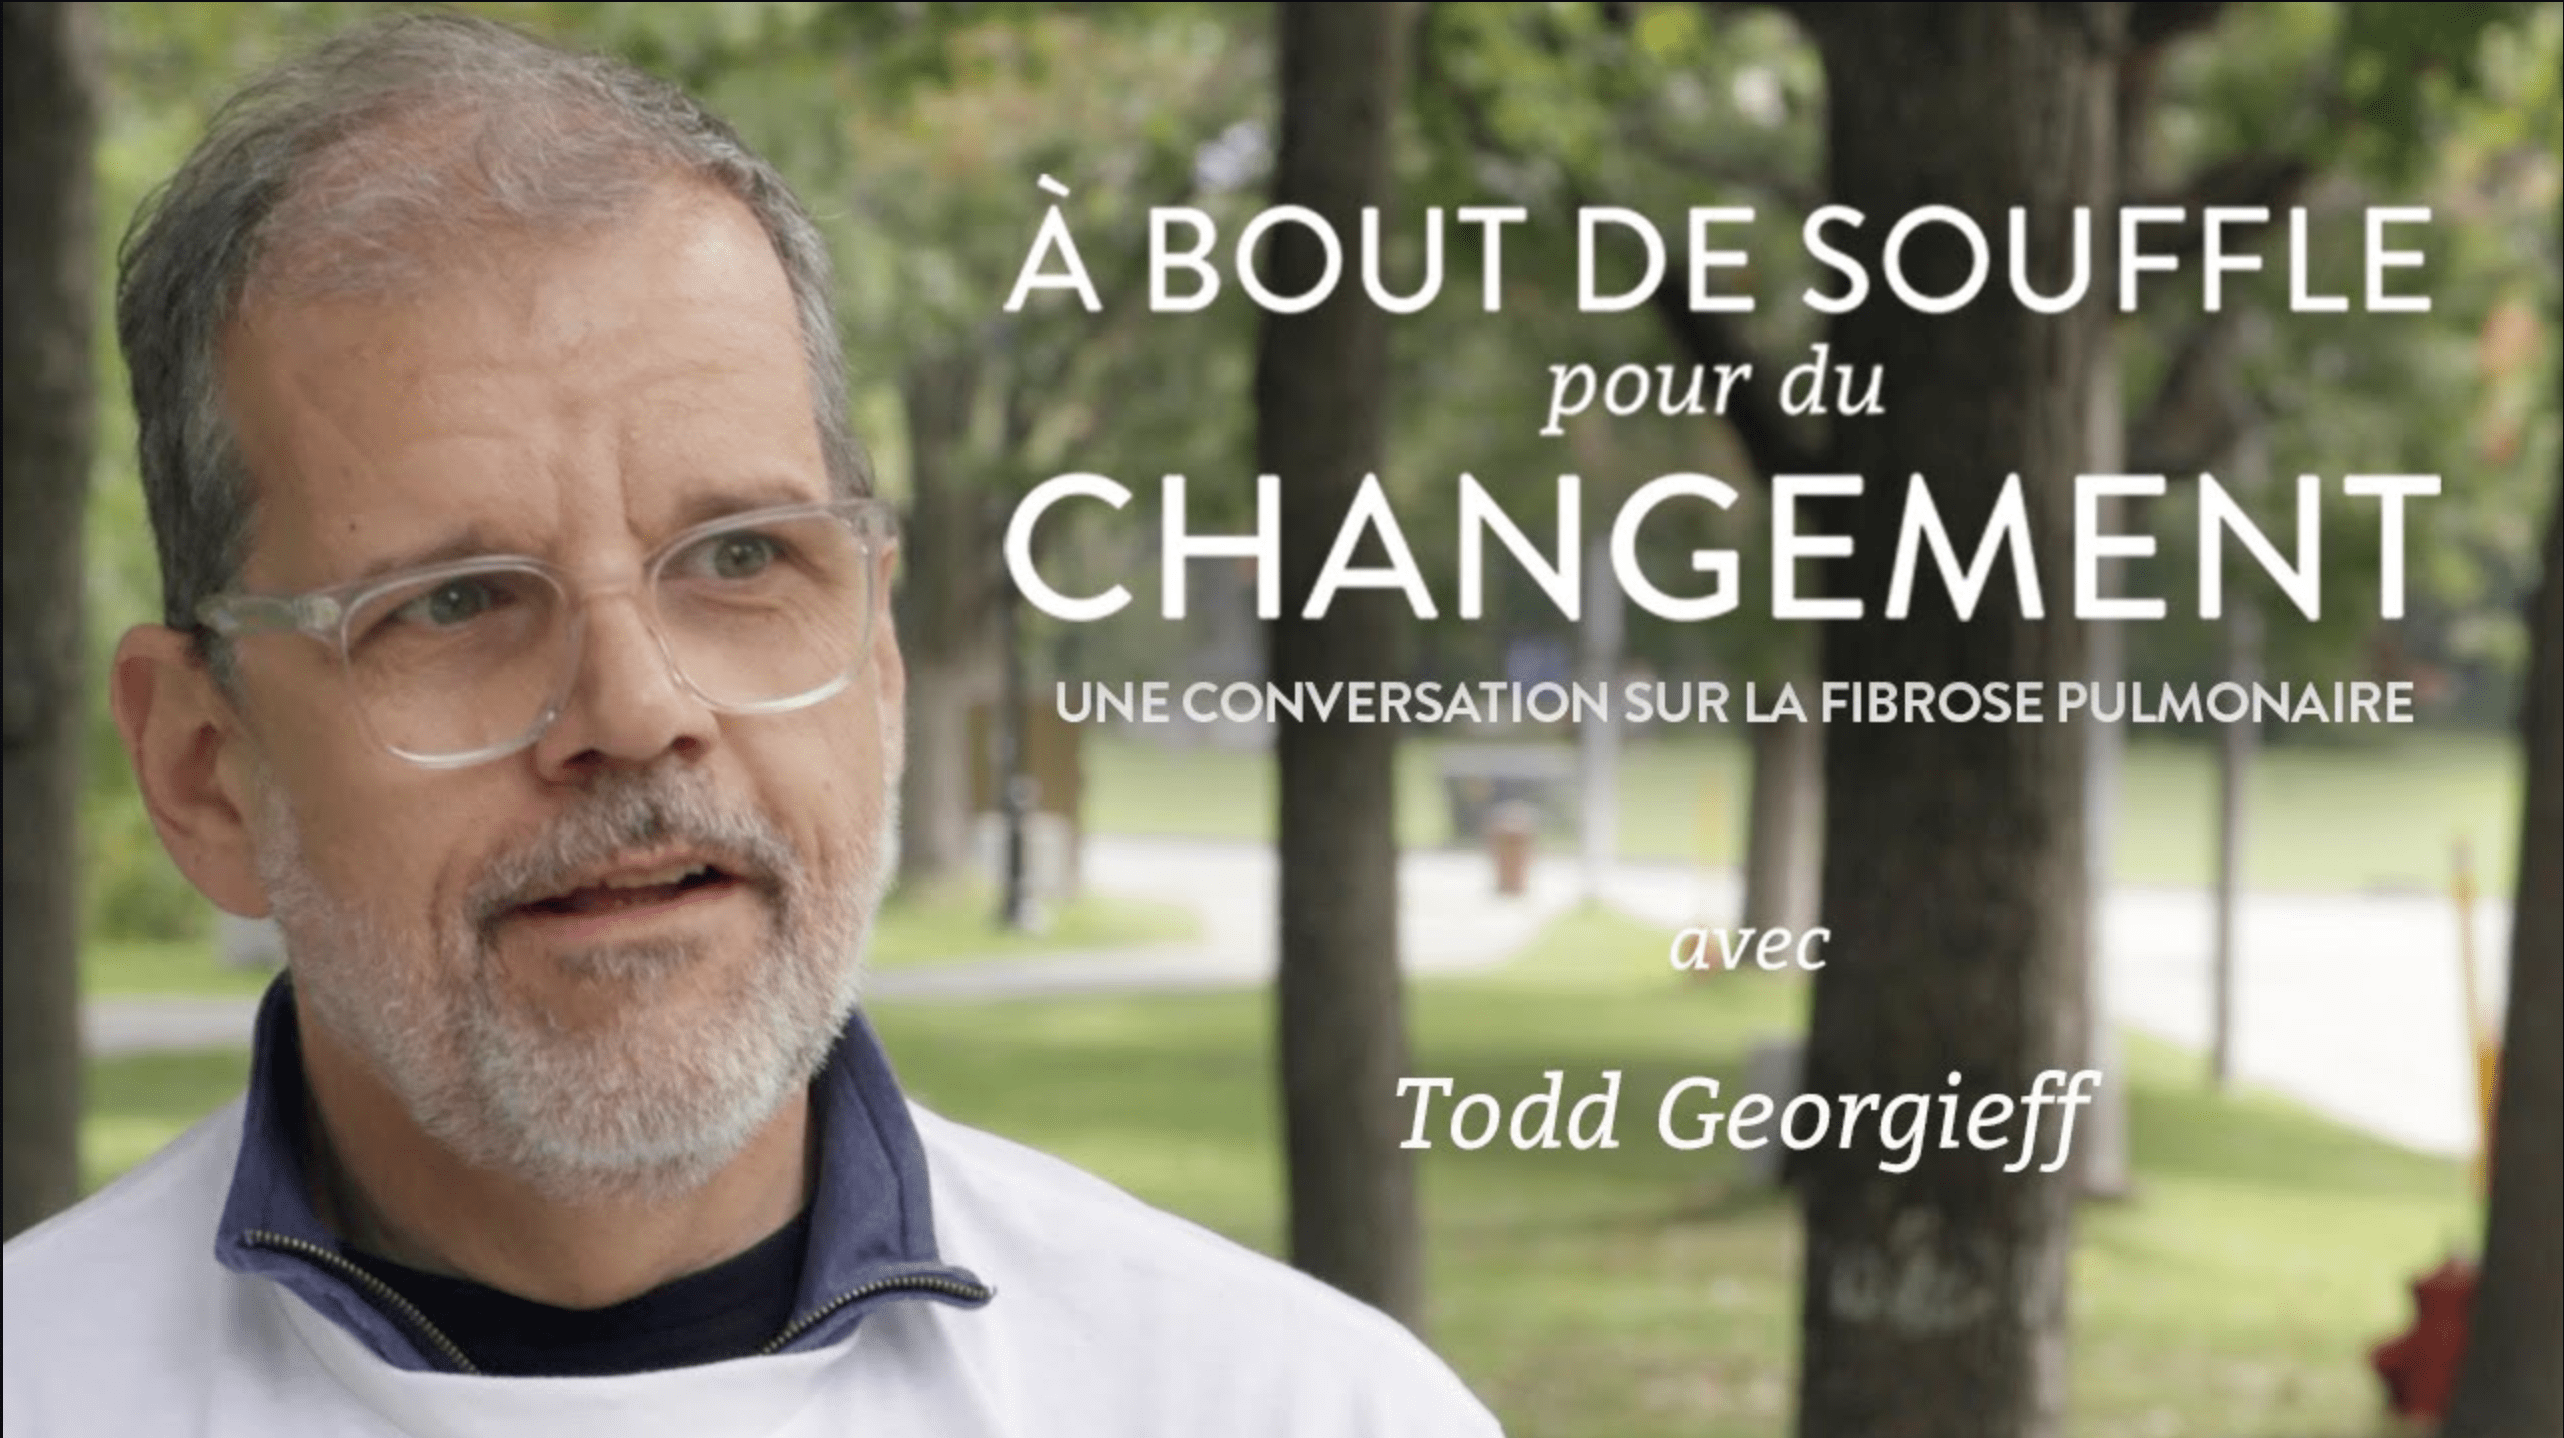 Man among trees with text: "À BOUT DE SOUFFLE pour du CHANGEMENT: UNE CONVERSATION SUR LA FIBROSE PULMONAIR avec Todd Georgieff"